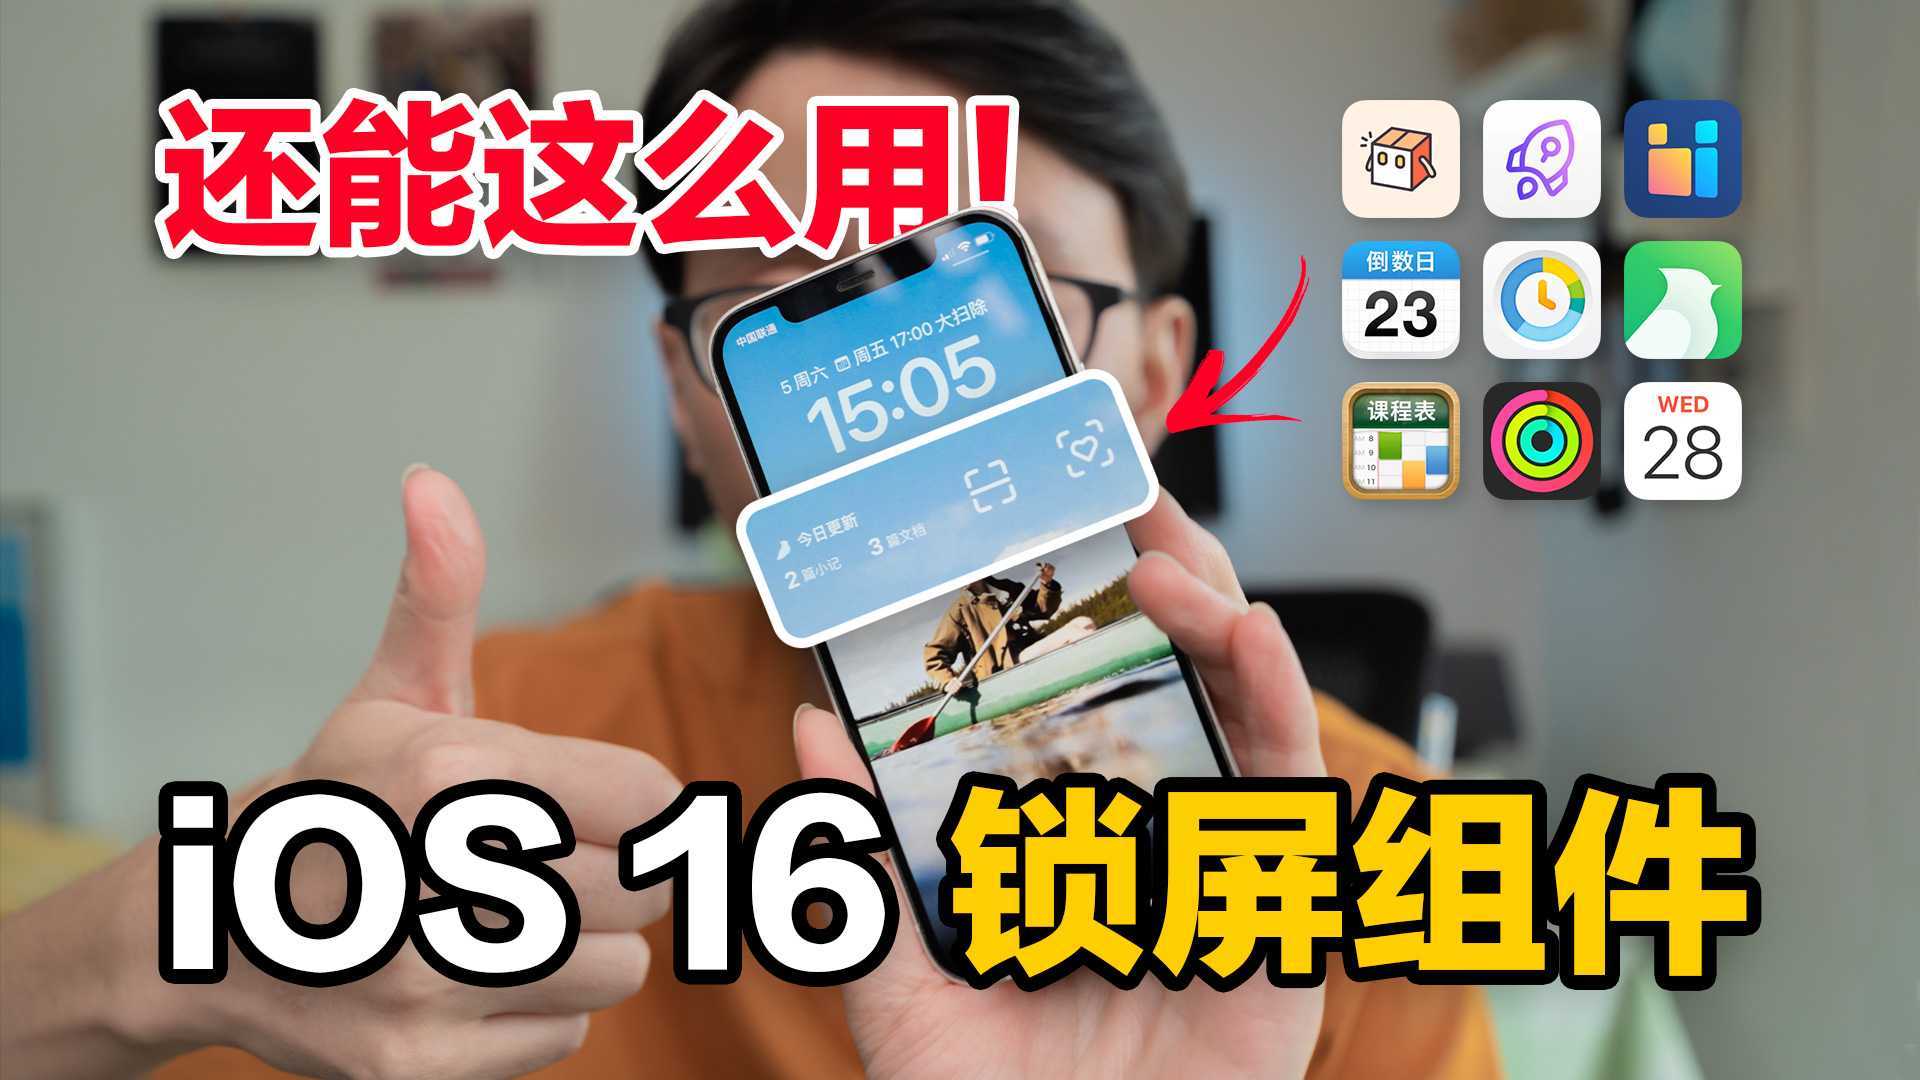 7个 iOS 16 锁屏组件 feat.快捷启动/时间效率/知识体系/倒数日